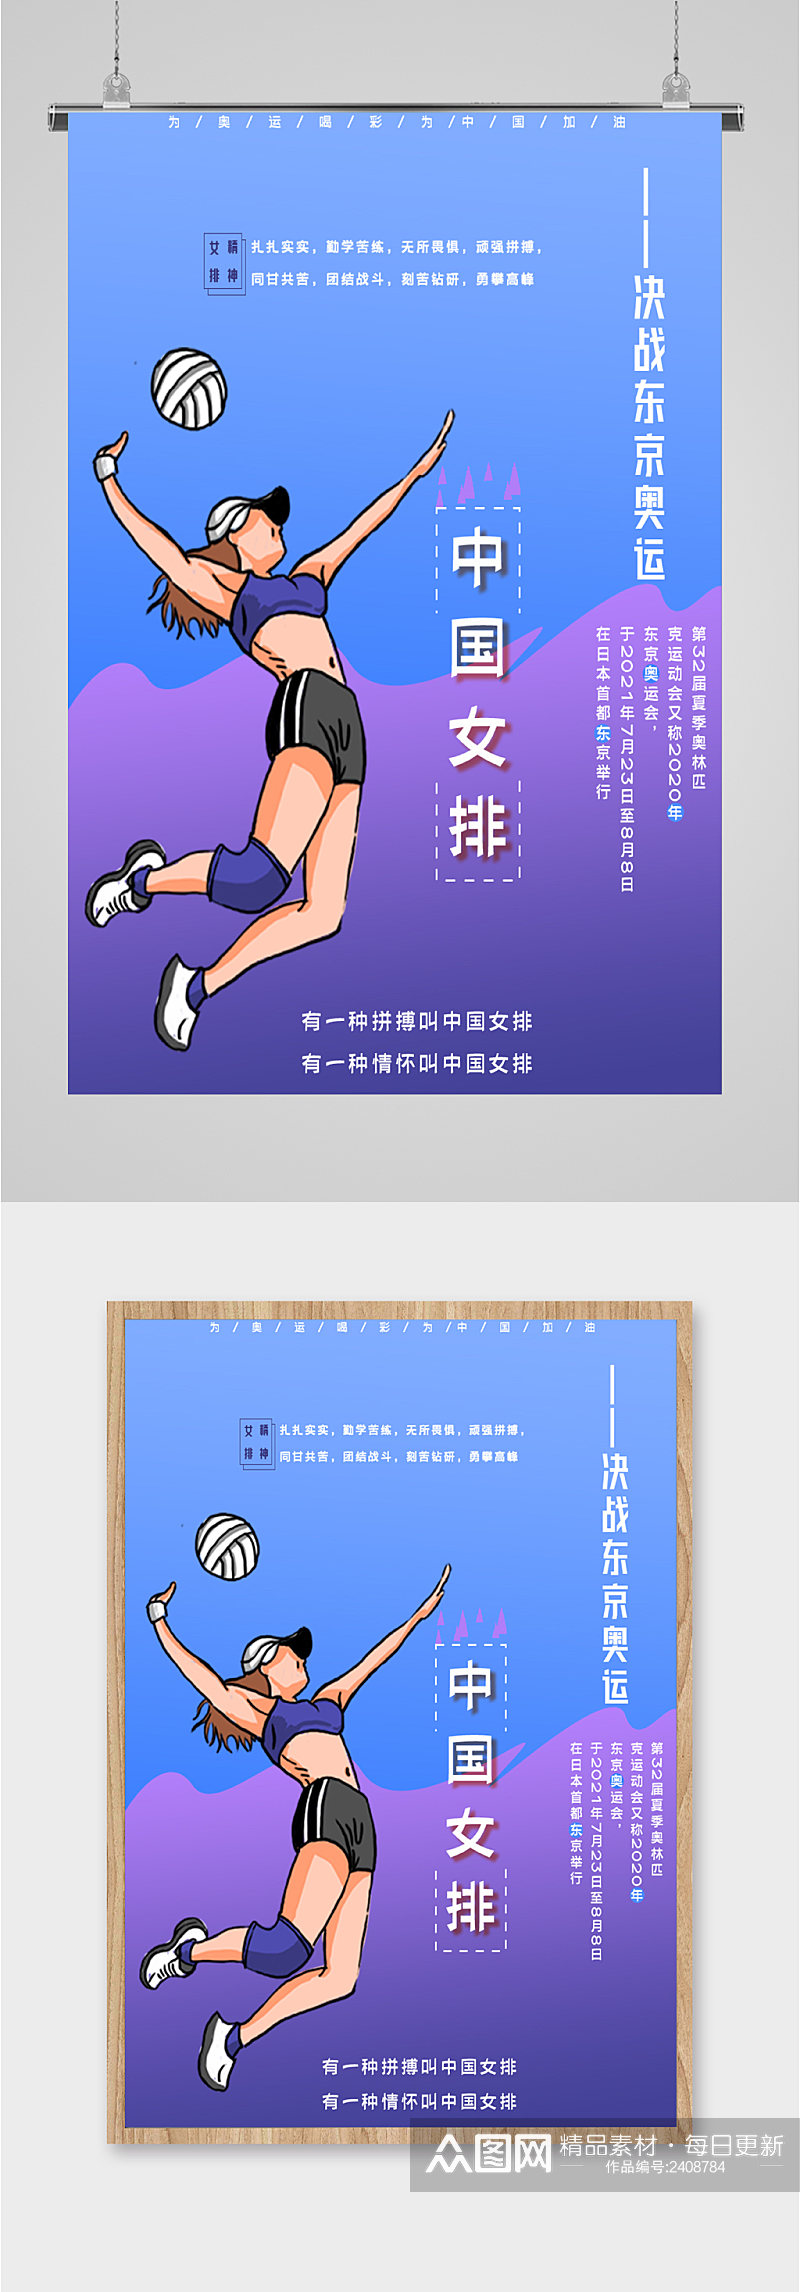 中国女排奥运加油女排加油海报素材